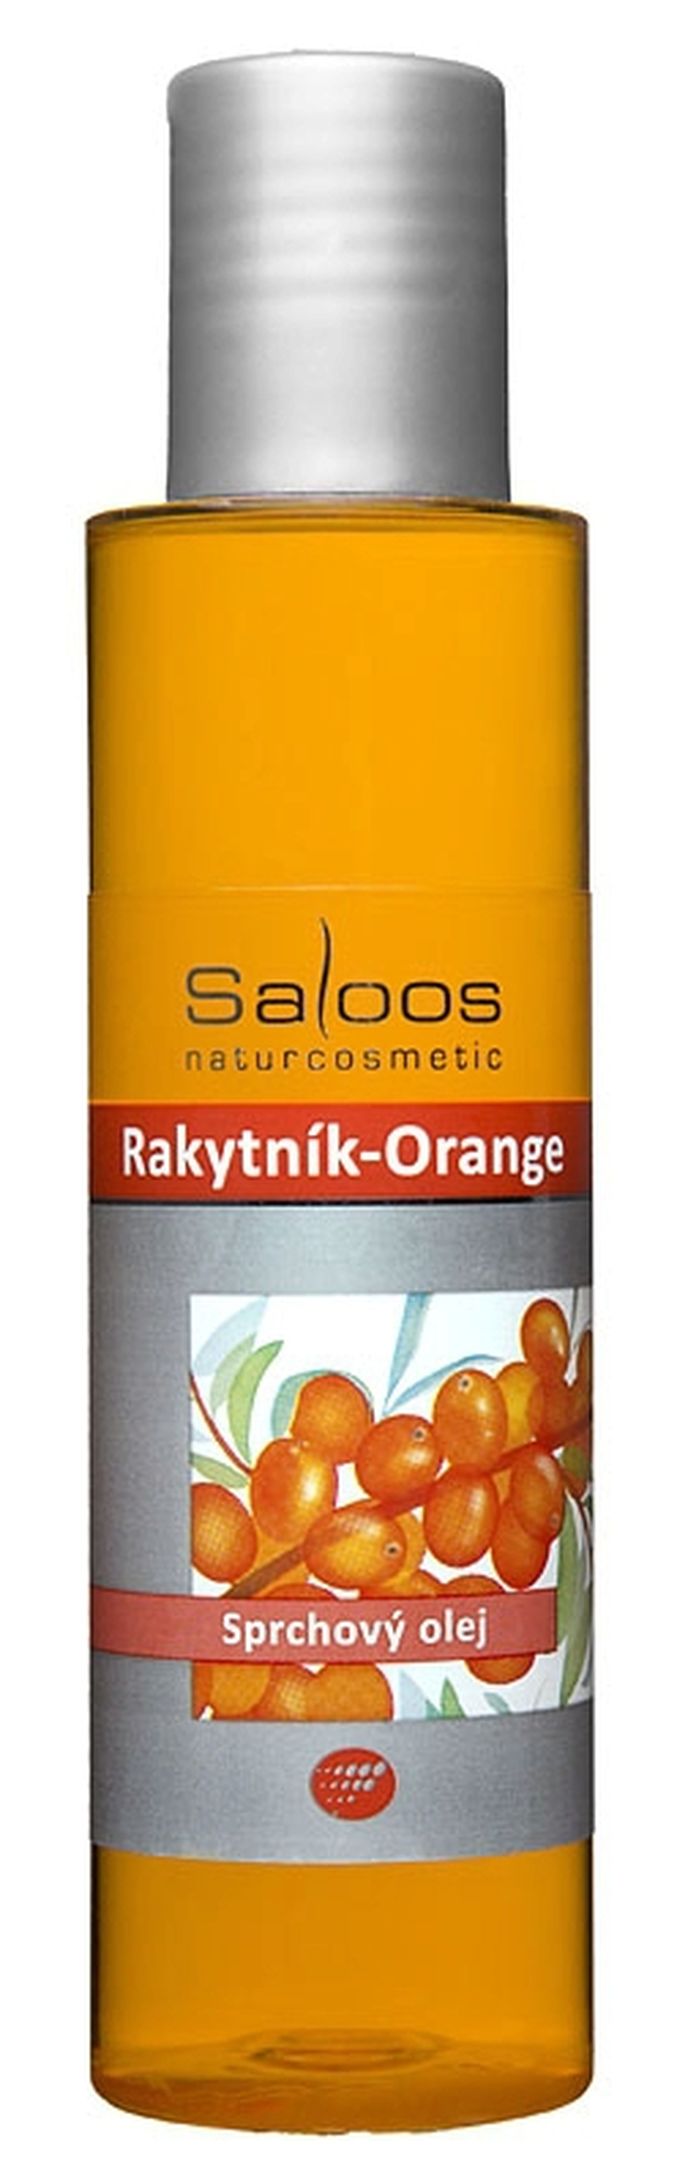 Sprchový olej Rakytník-Orange, Saloos, saloos.cz, 124 Kč/125 ml